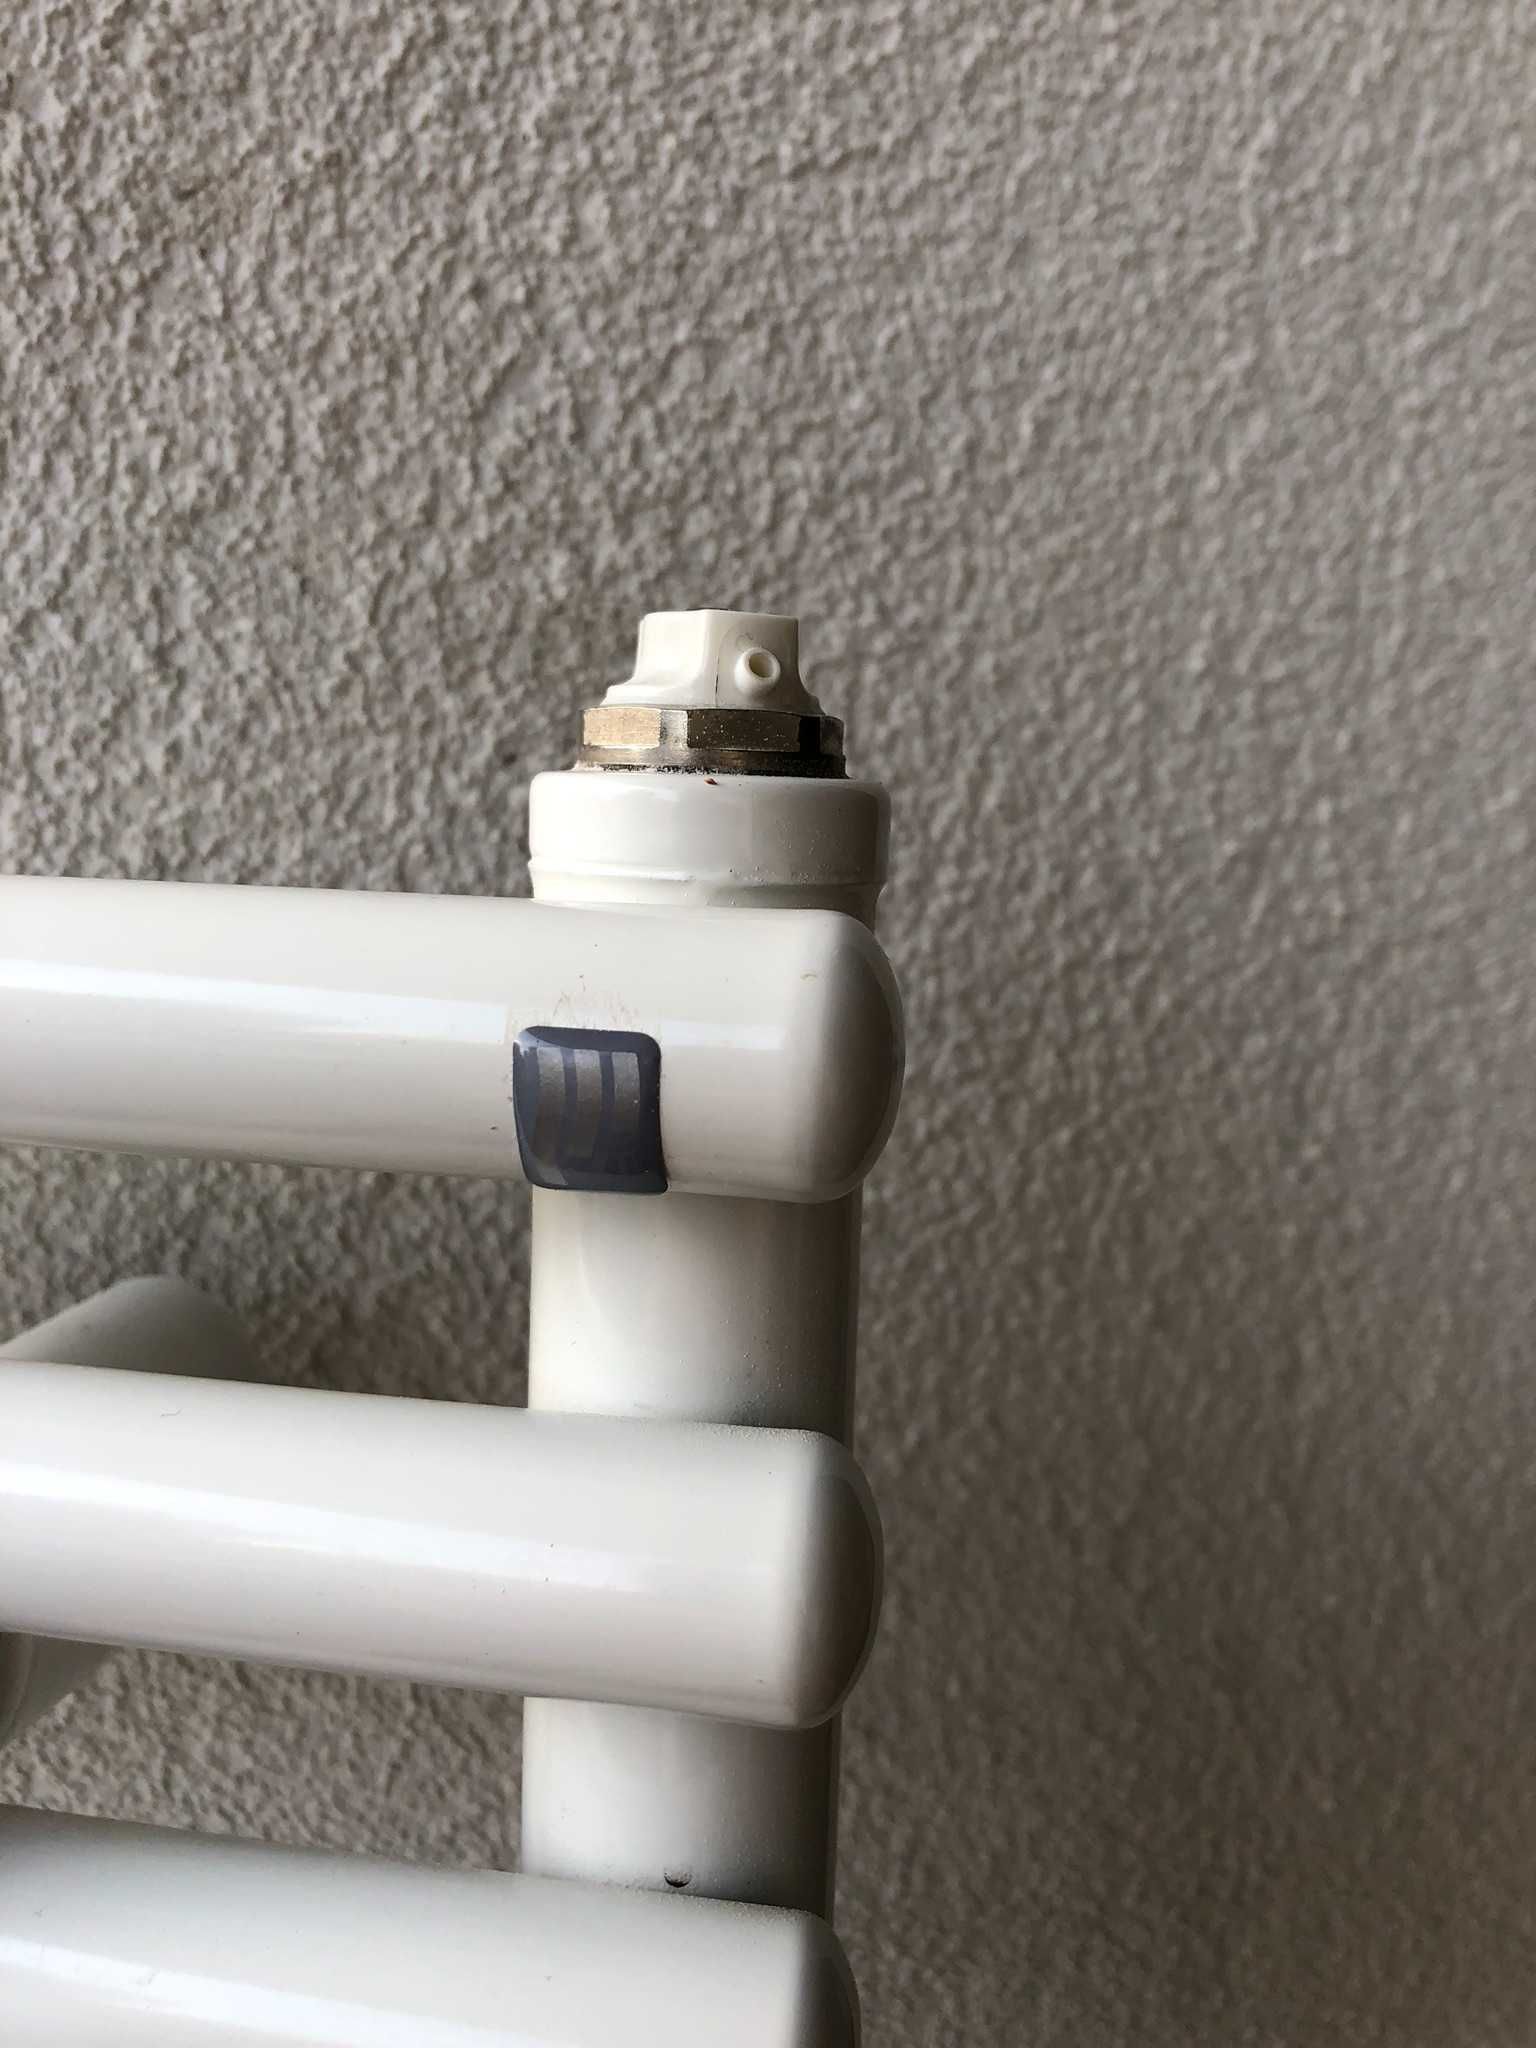 Grzejnik łazienkowy z termostatem. Wymiary: 115cm x 40cm